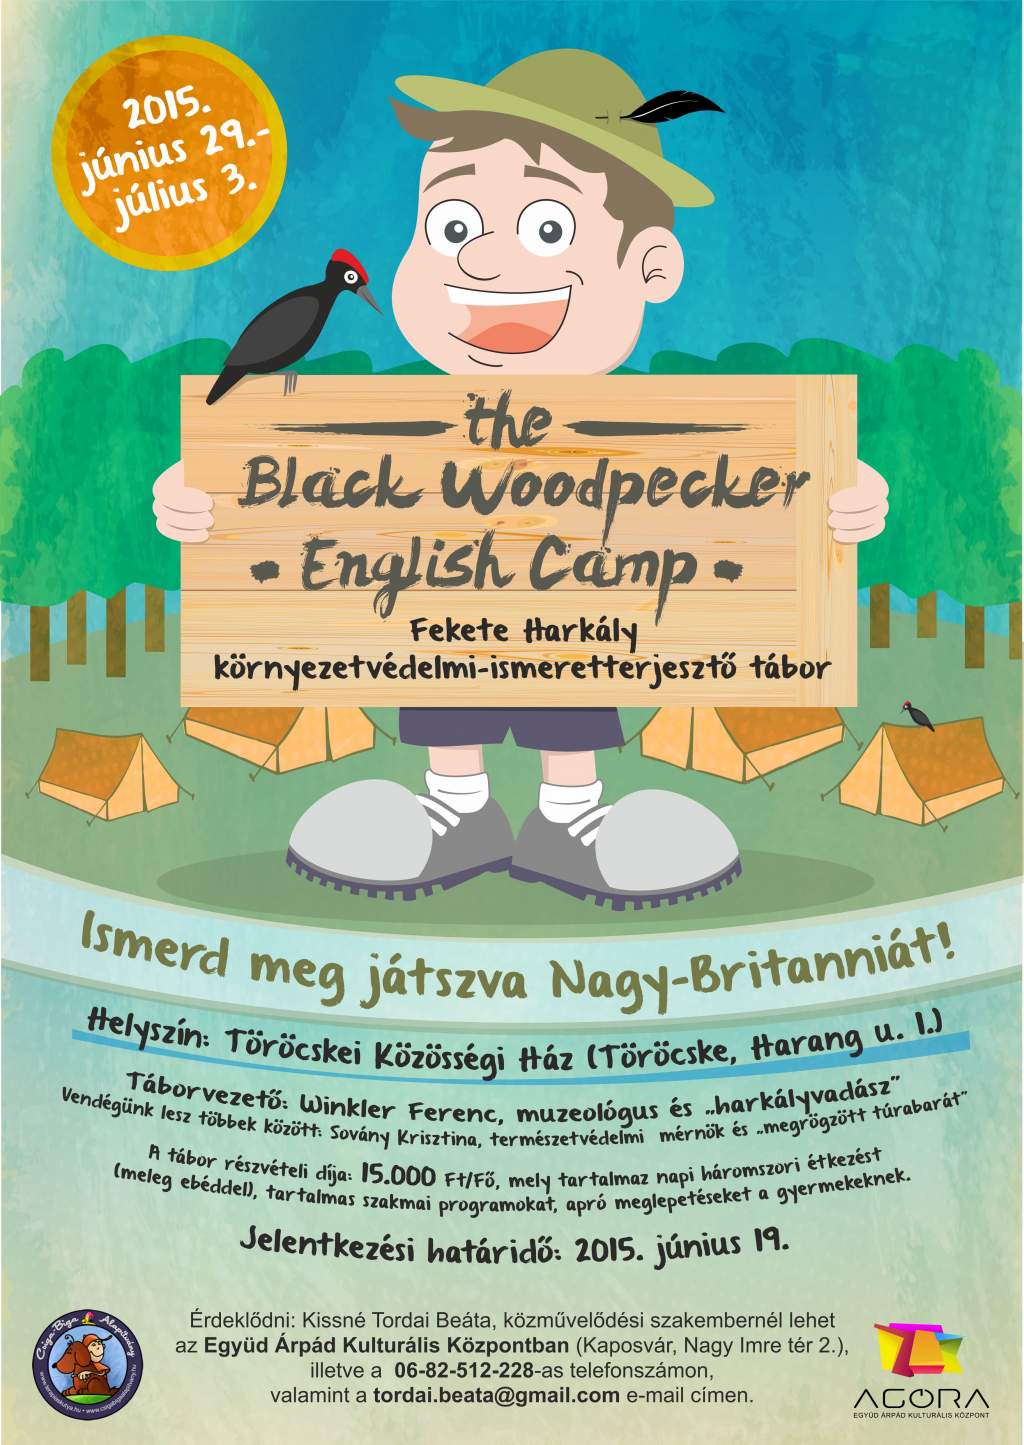 The Black Woodpecker English Camp - Fekete harkály angol nyelvű, ismeretterjesztő napközis tábor